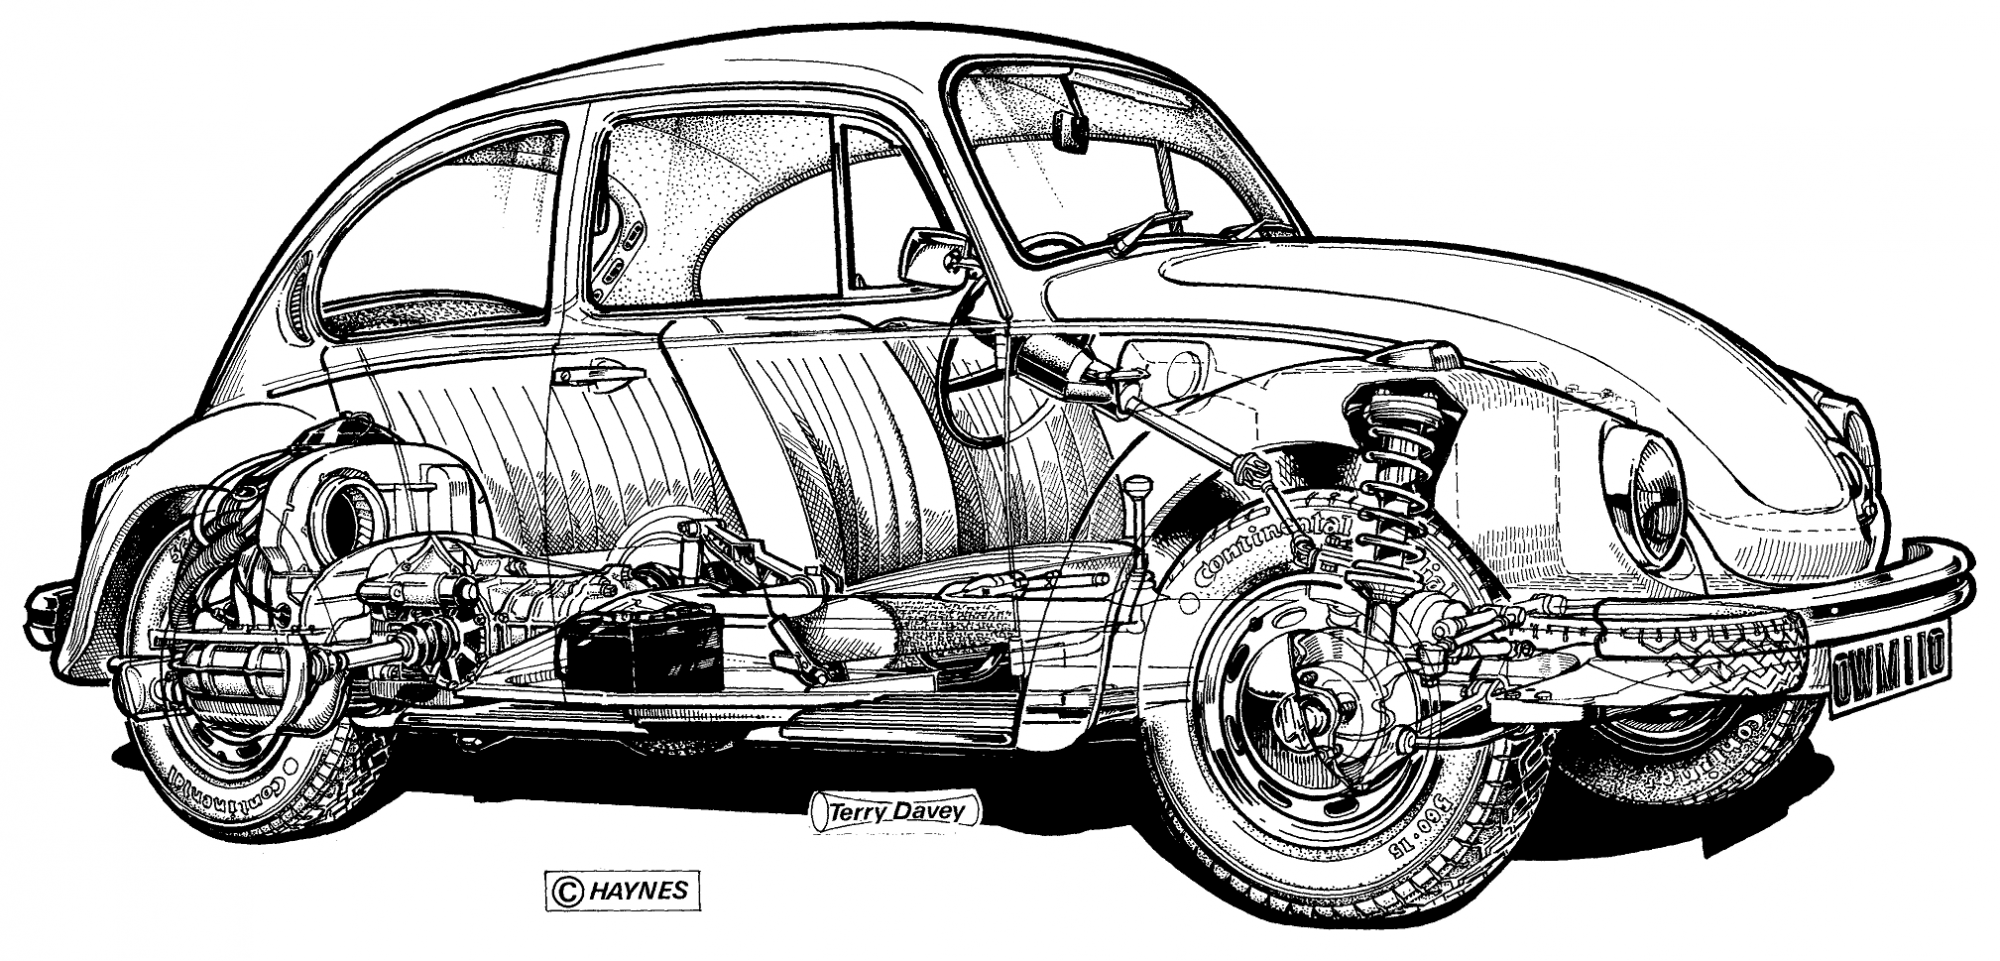 Terry Davey, Haynes, Volkswagen Beetle